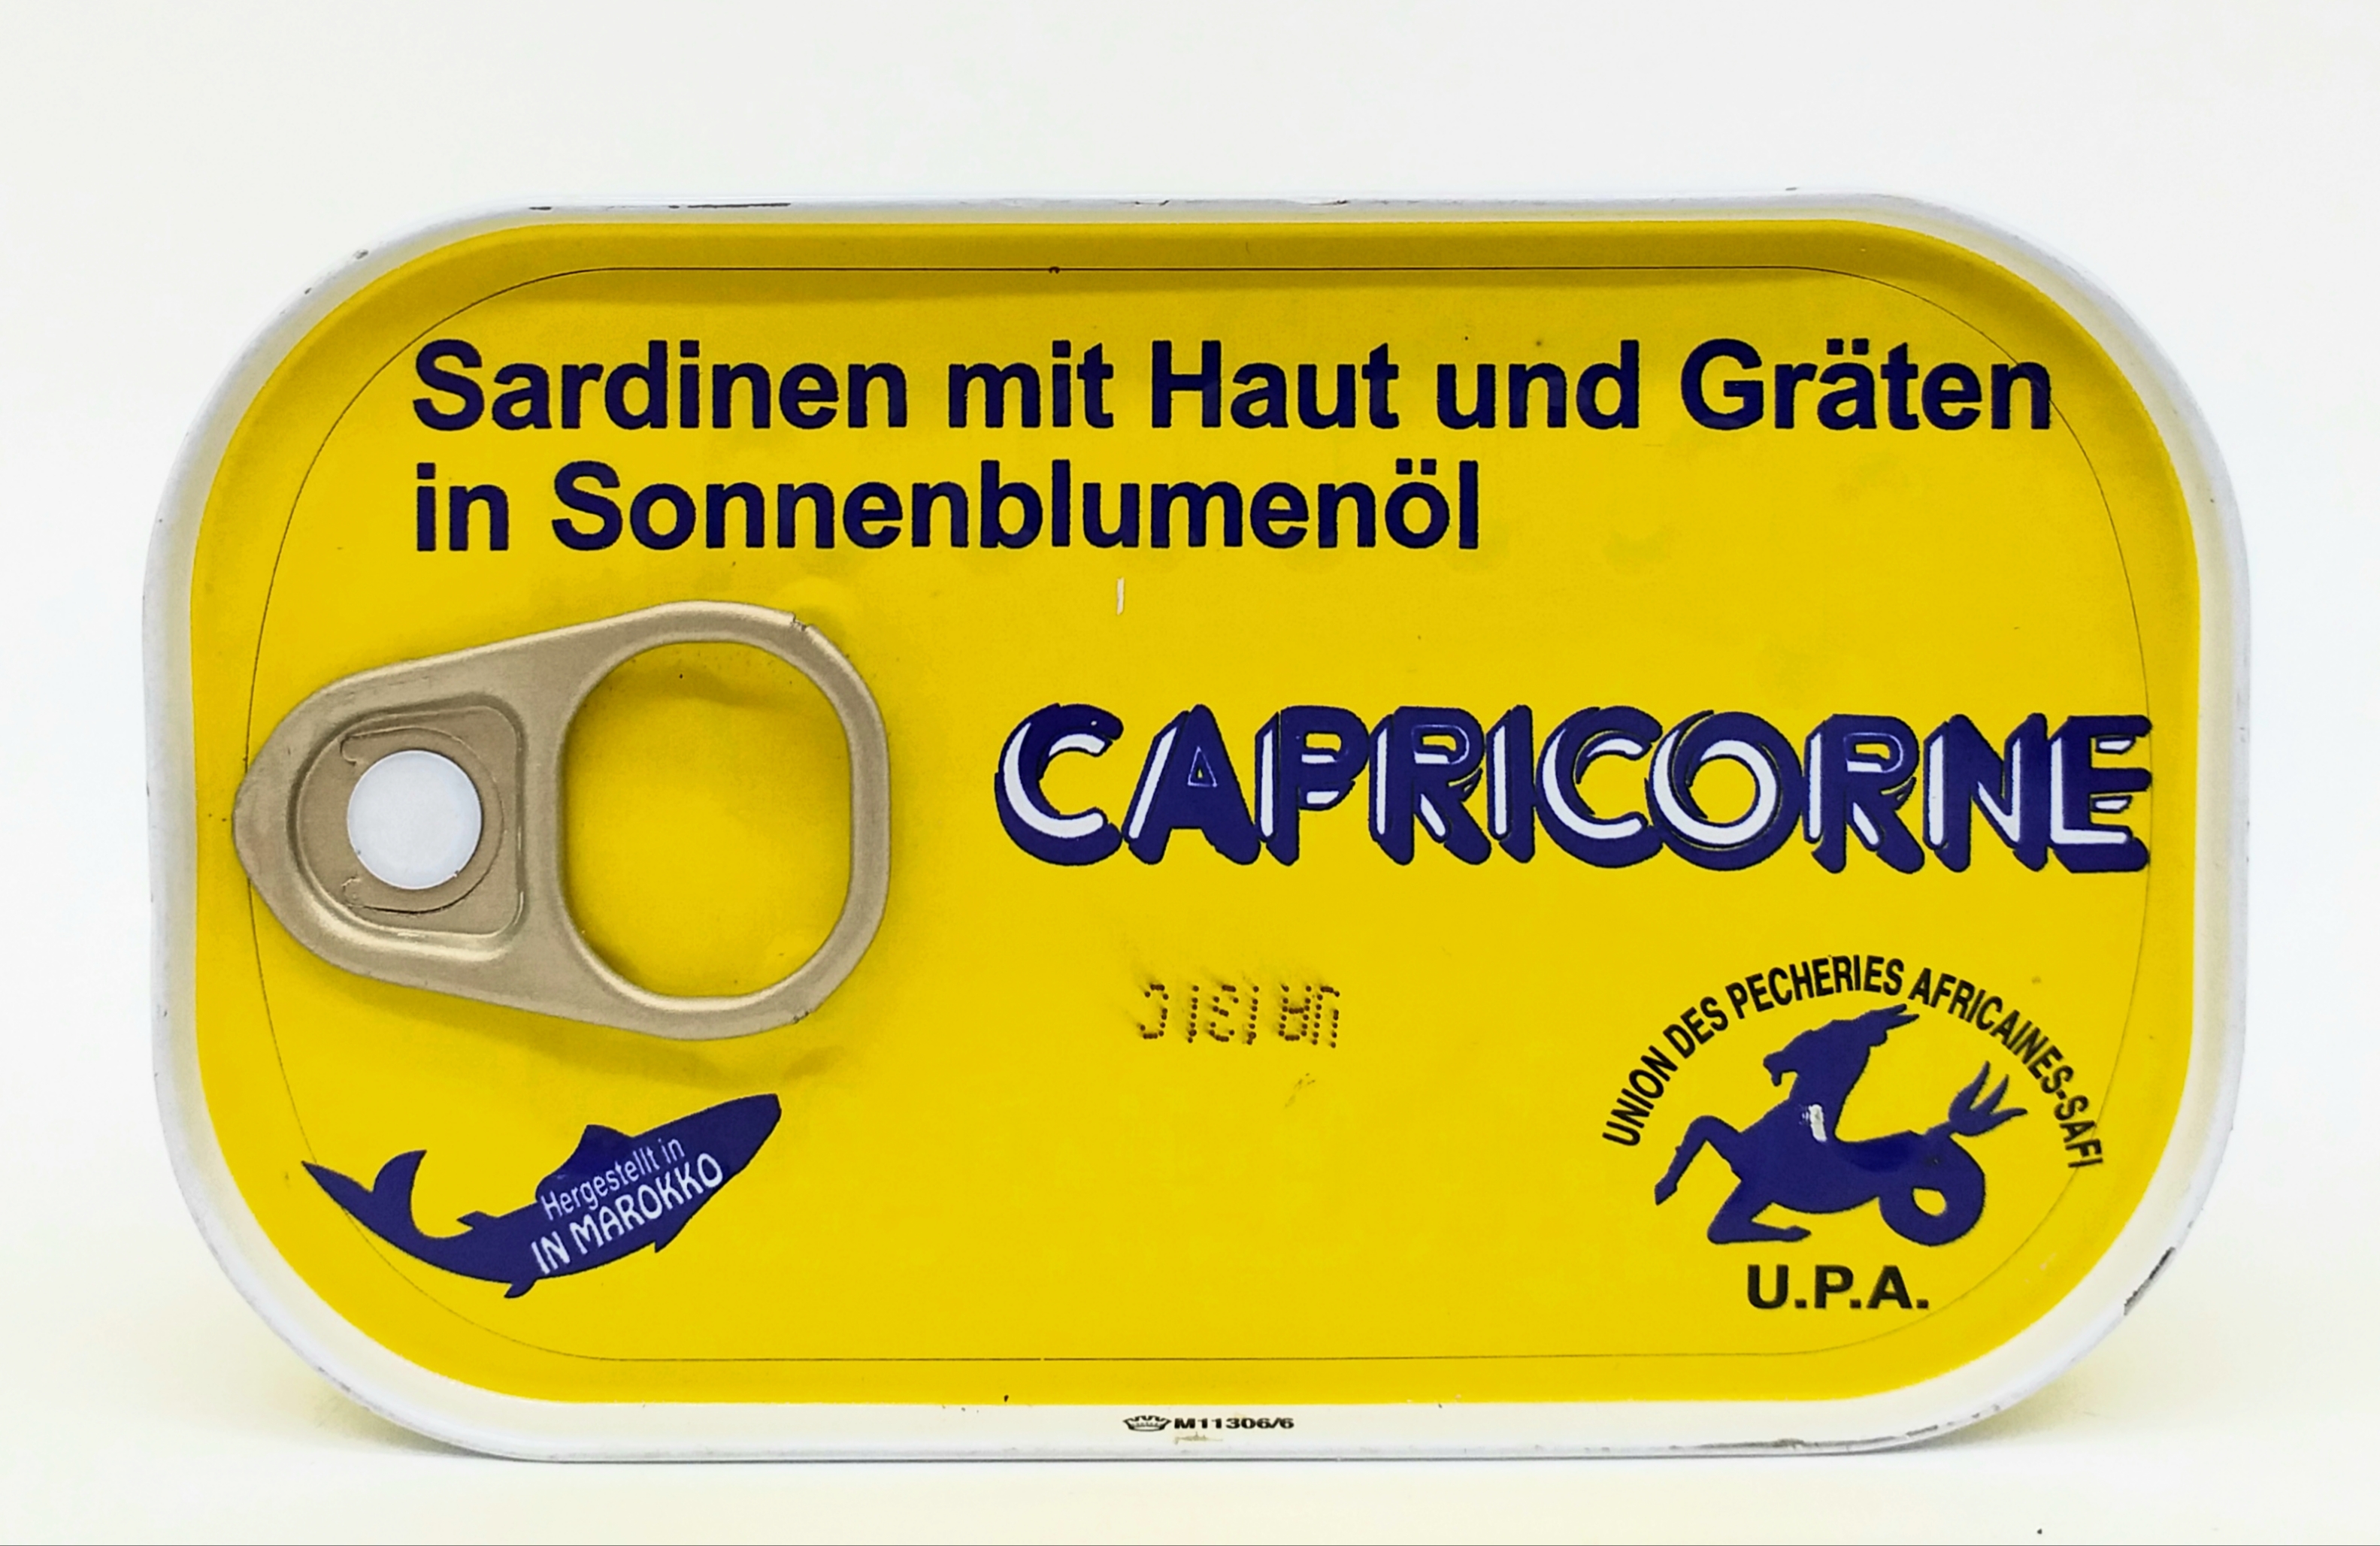 Capricorne Sardinen in Sonnenbl.Öl 125g